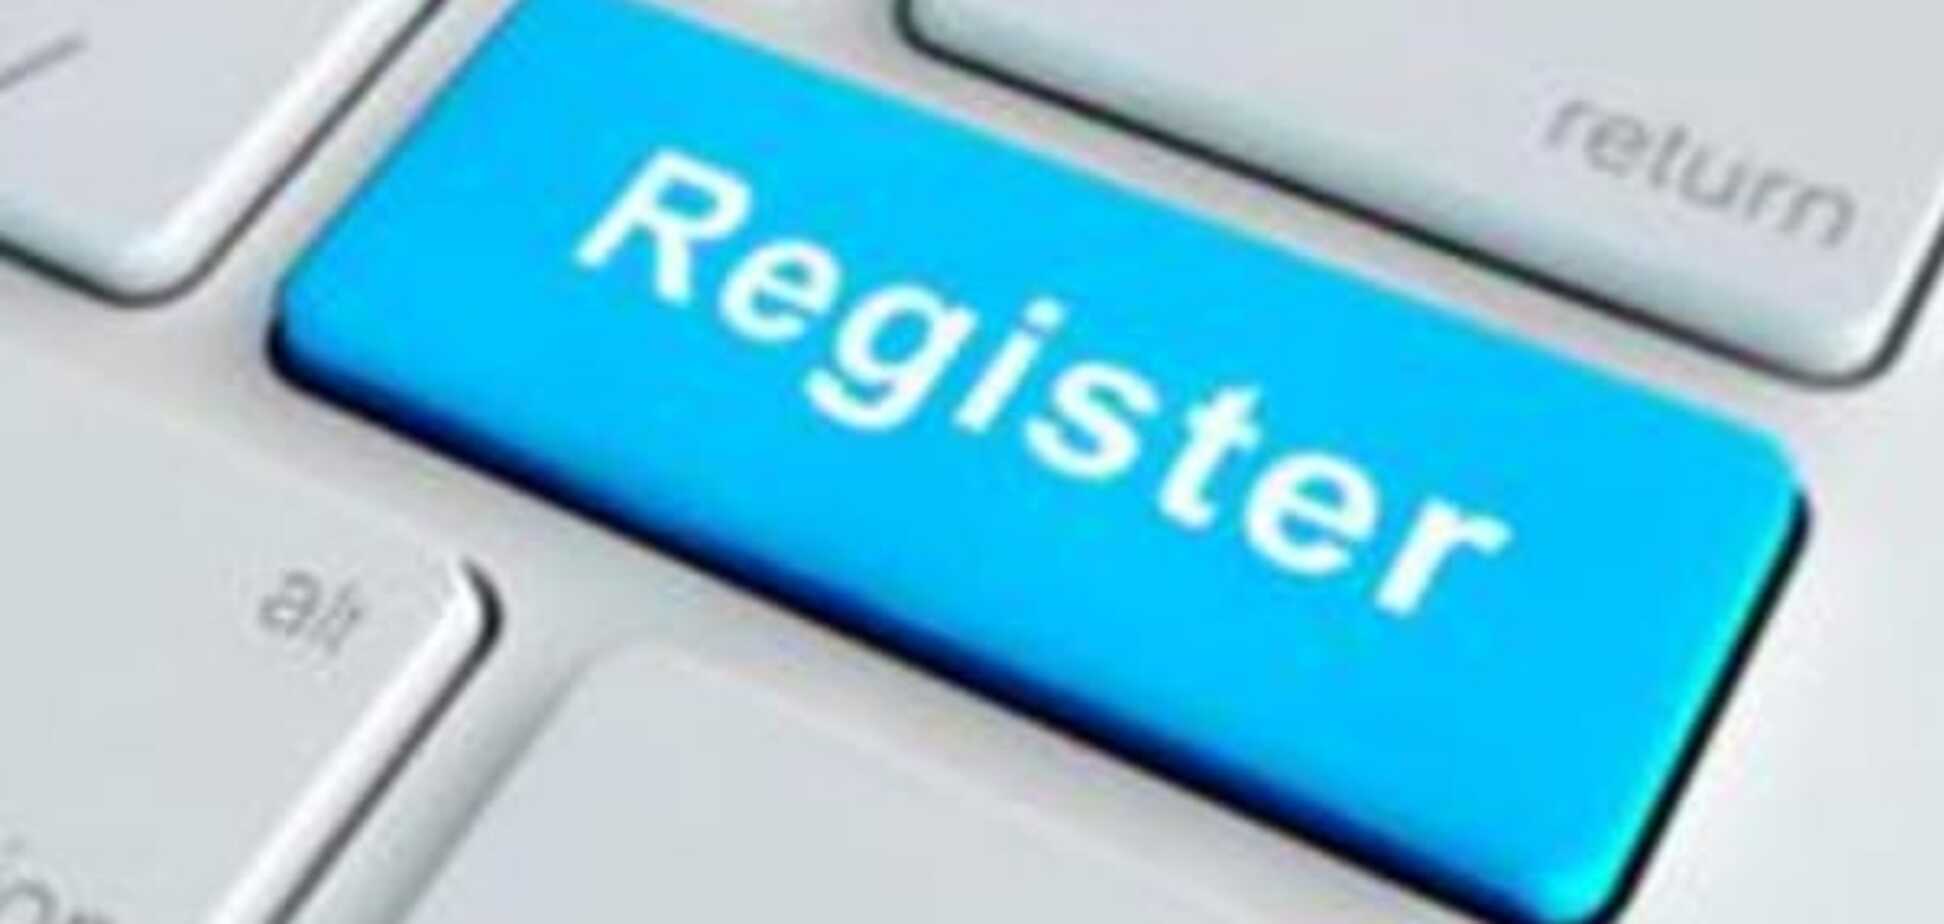 Регистрация бизнеса в Украине